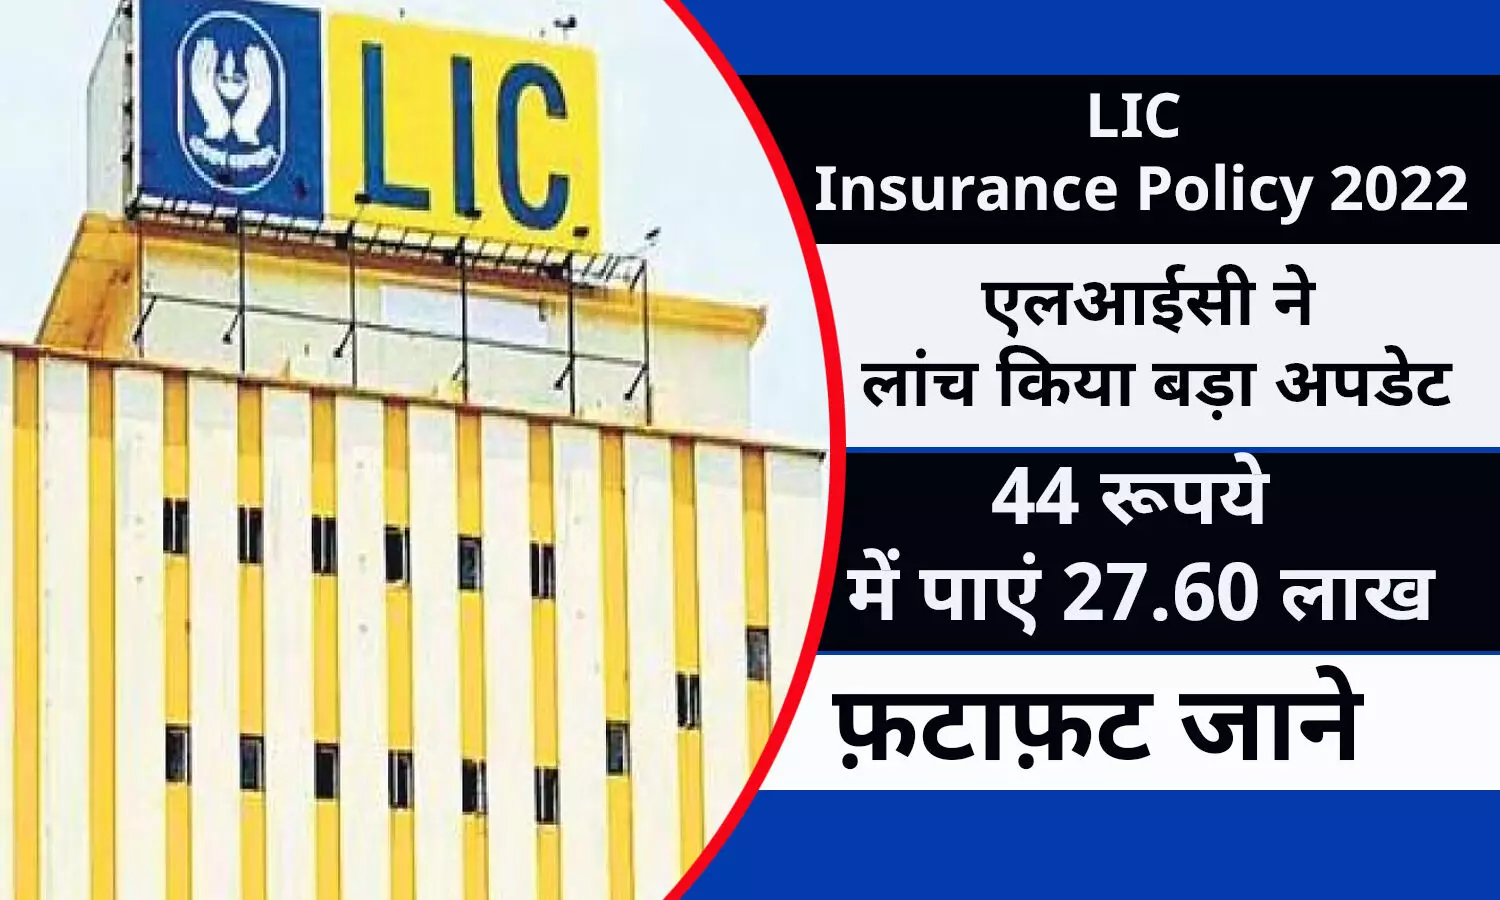 LIC Insurance Policy In Hindi 2022: एलआईसी ने लांच किया बड़ा अपडेट, 44 रूपये में पाएं 27.60 लाख, फ़टाफ़ट जाने